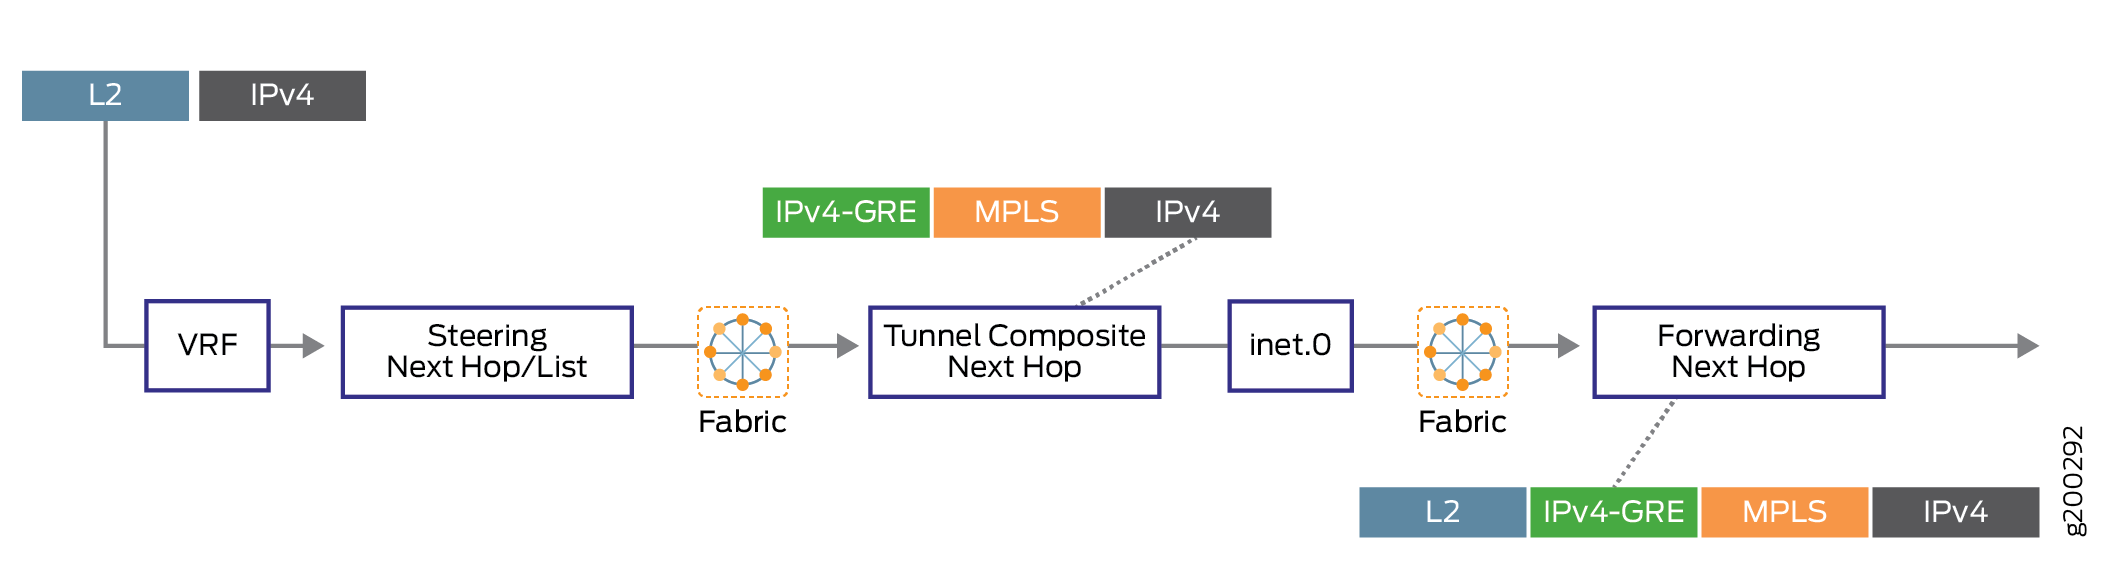 ローカリゼーションを使用した Next-hop ベースの動的トンネルの転送パス